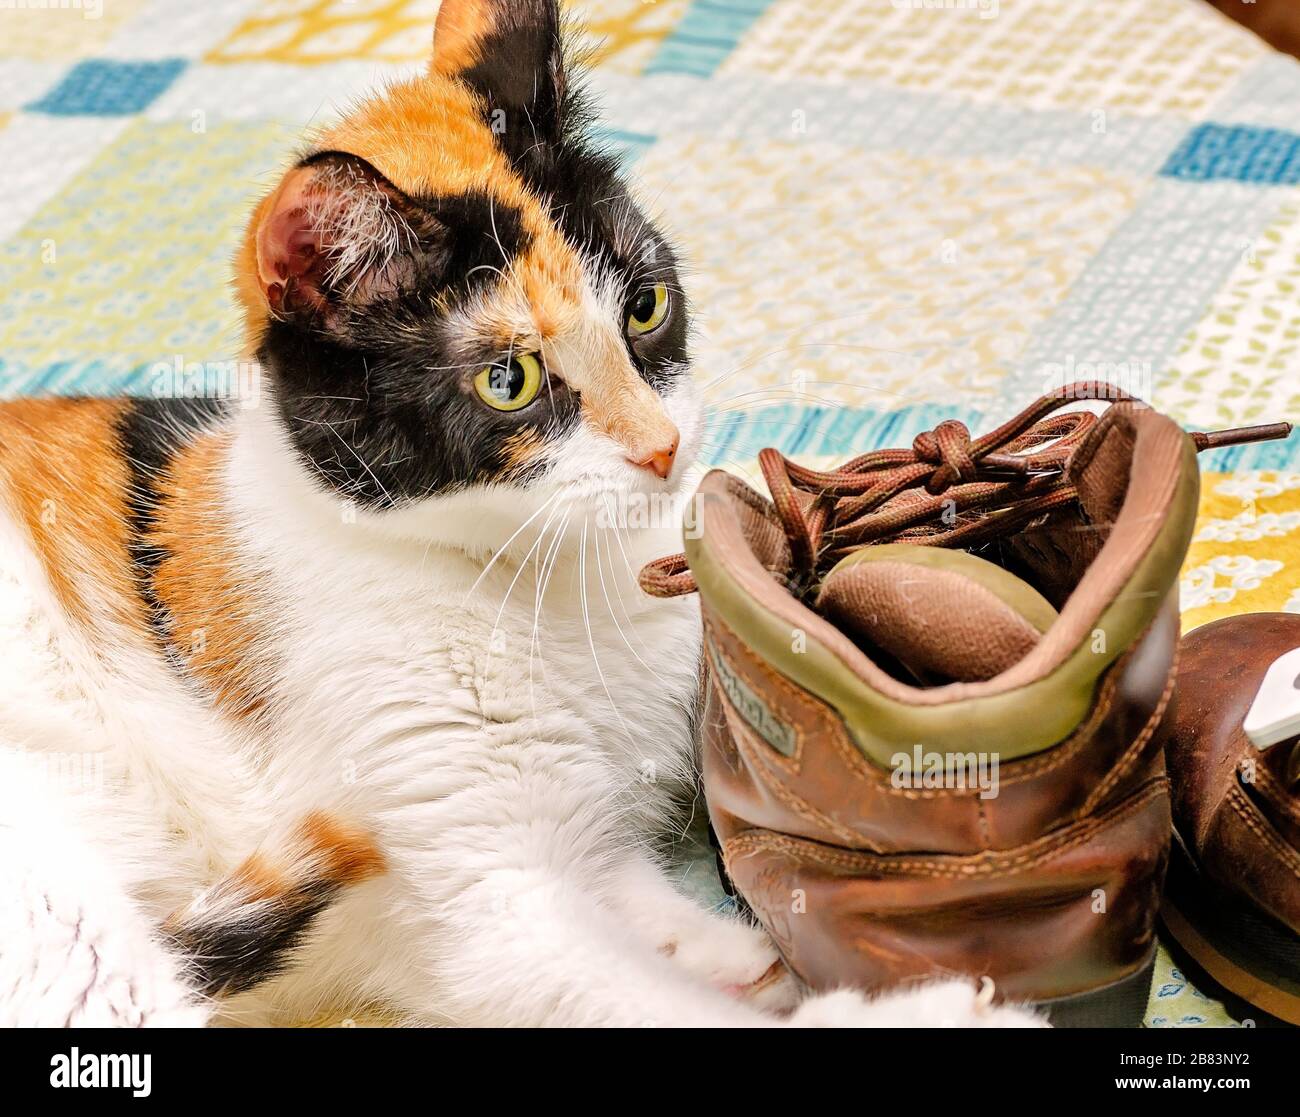 La zucca, un gatto calico, gioca con le scarpe del suo proprietario, il 29 aprile 2017. I gatti sono spesso attratti dalle scarpe perché conservano l'odore del proprietario. Foto Stock